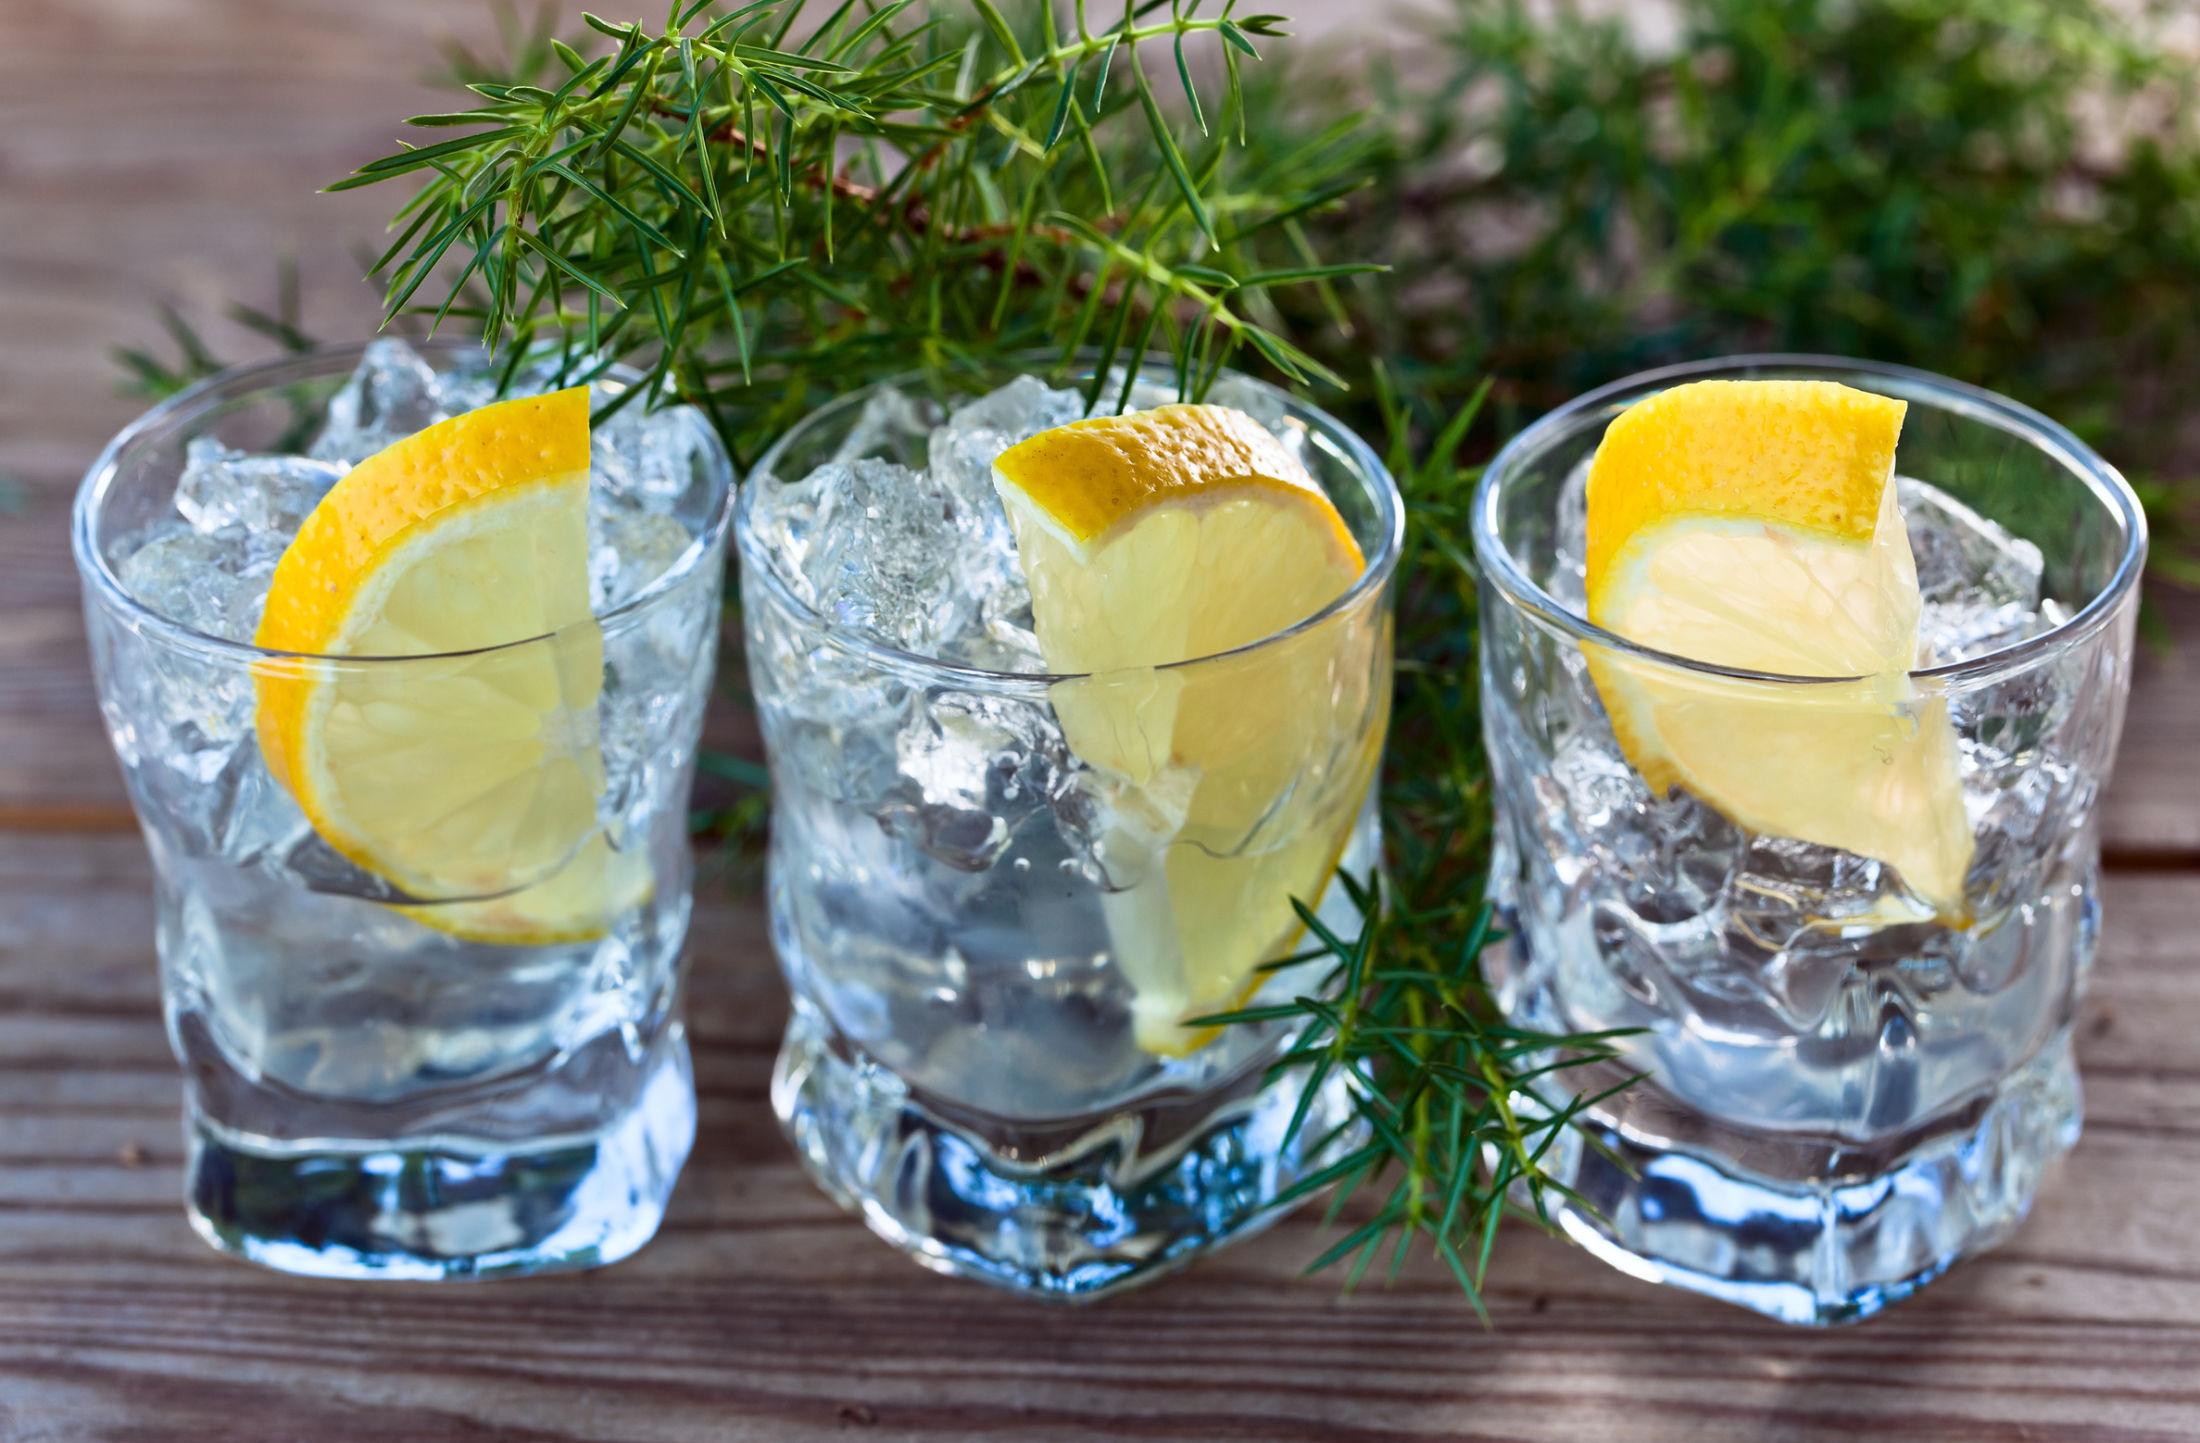 Gin er godt i drinken. Mix den med appelsinjuice, tonic eller sodavann. Eller drikk den ren over is, med bare isbiter og en skive sitron. Foto: Igor Normann/NTB Scanpix.